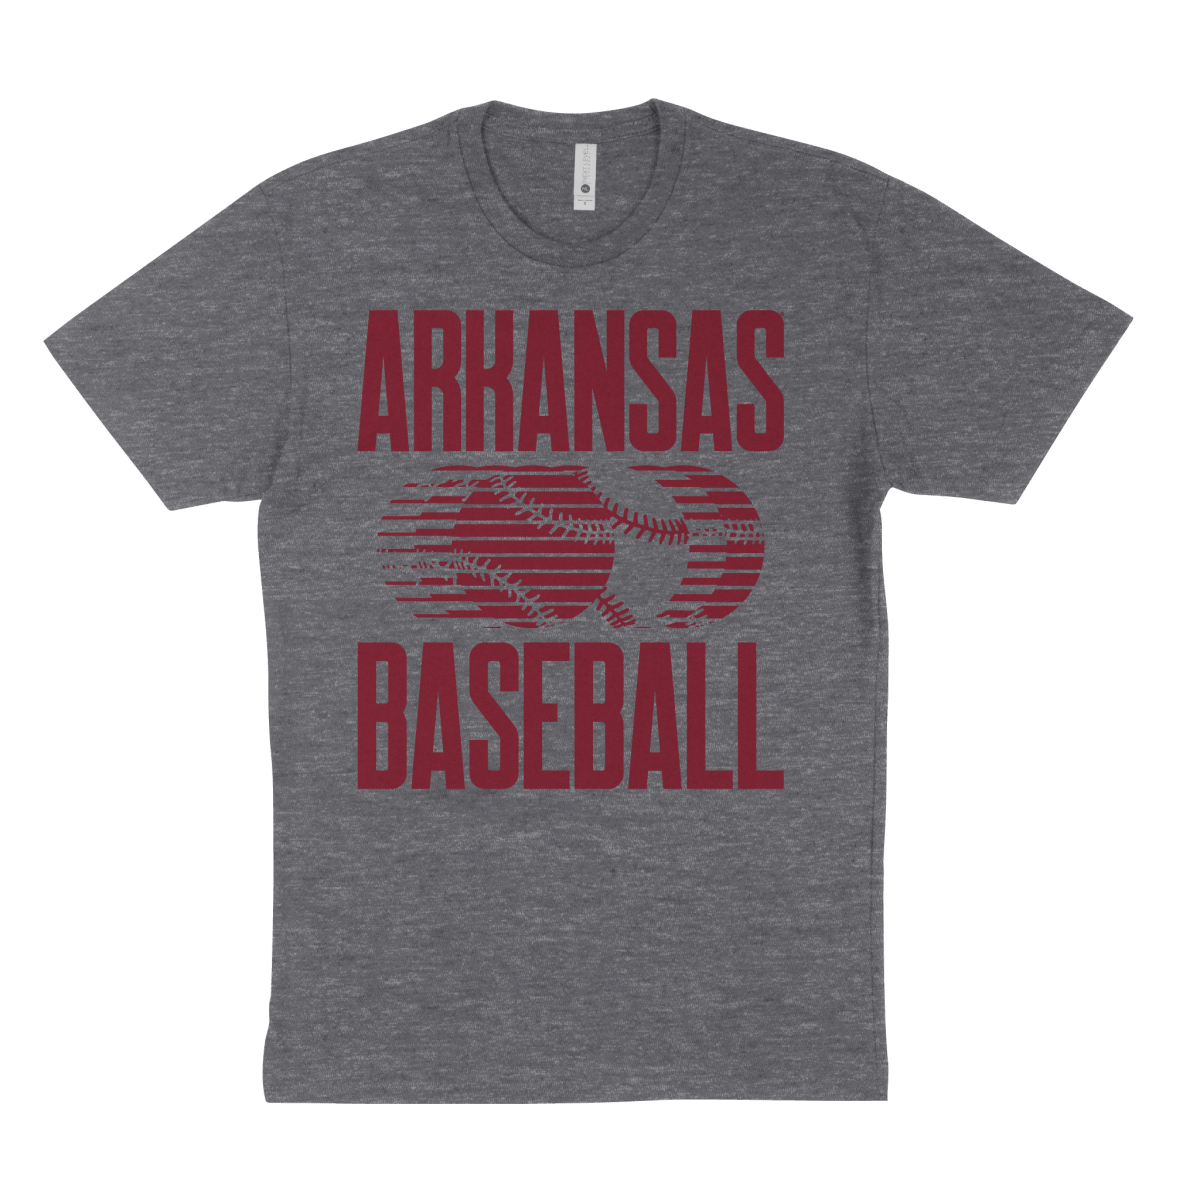 Arkansas Repeat Baseball T-Shirt - Shop B-Unlimited